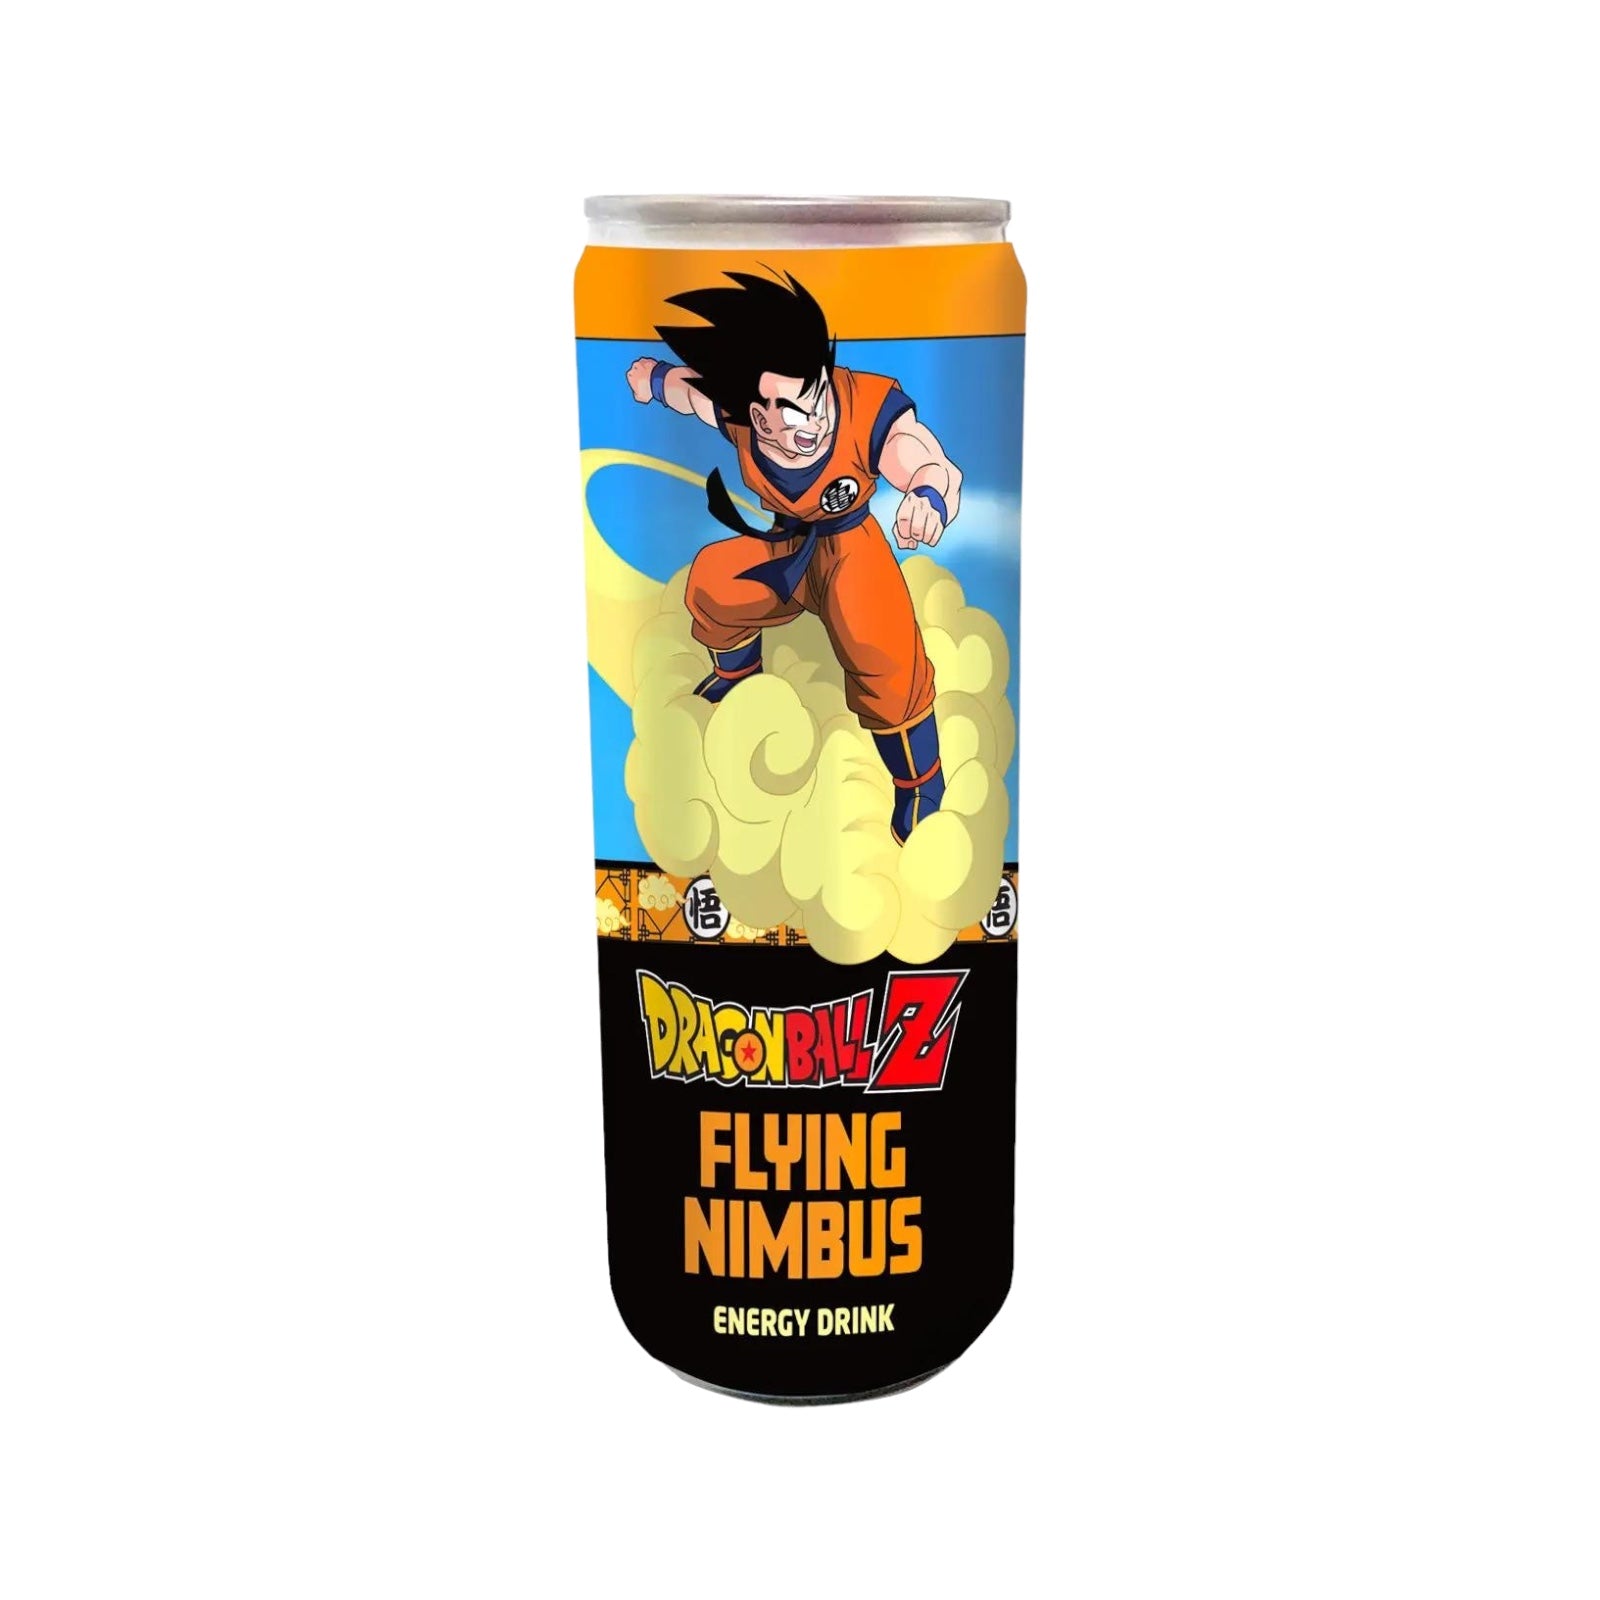 Dragon Ball Z Flying Nimbus 
Energy Drink 335ml